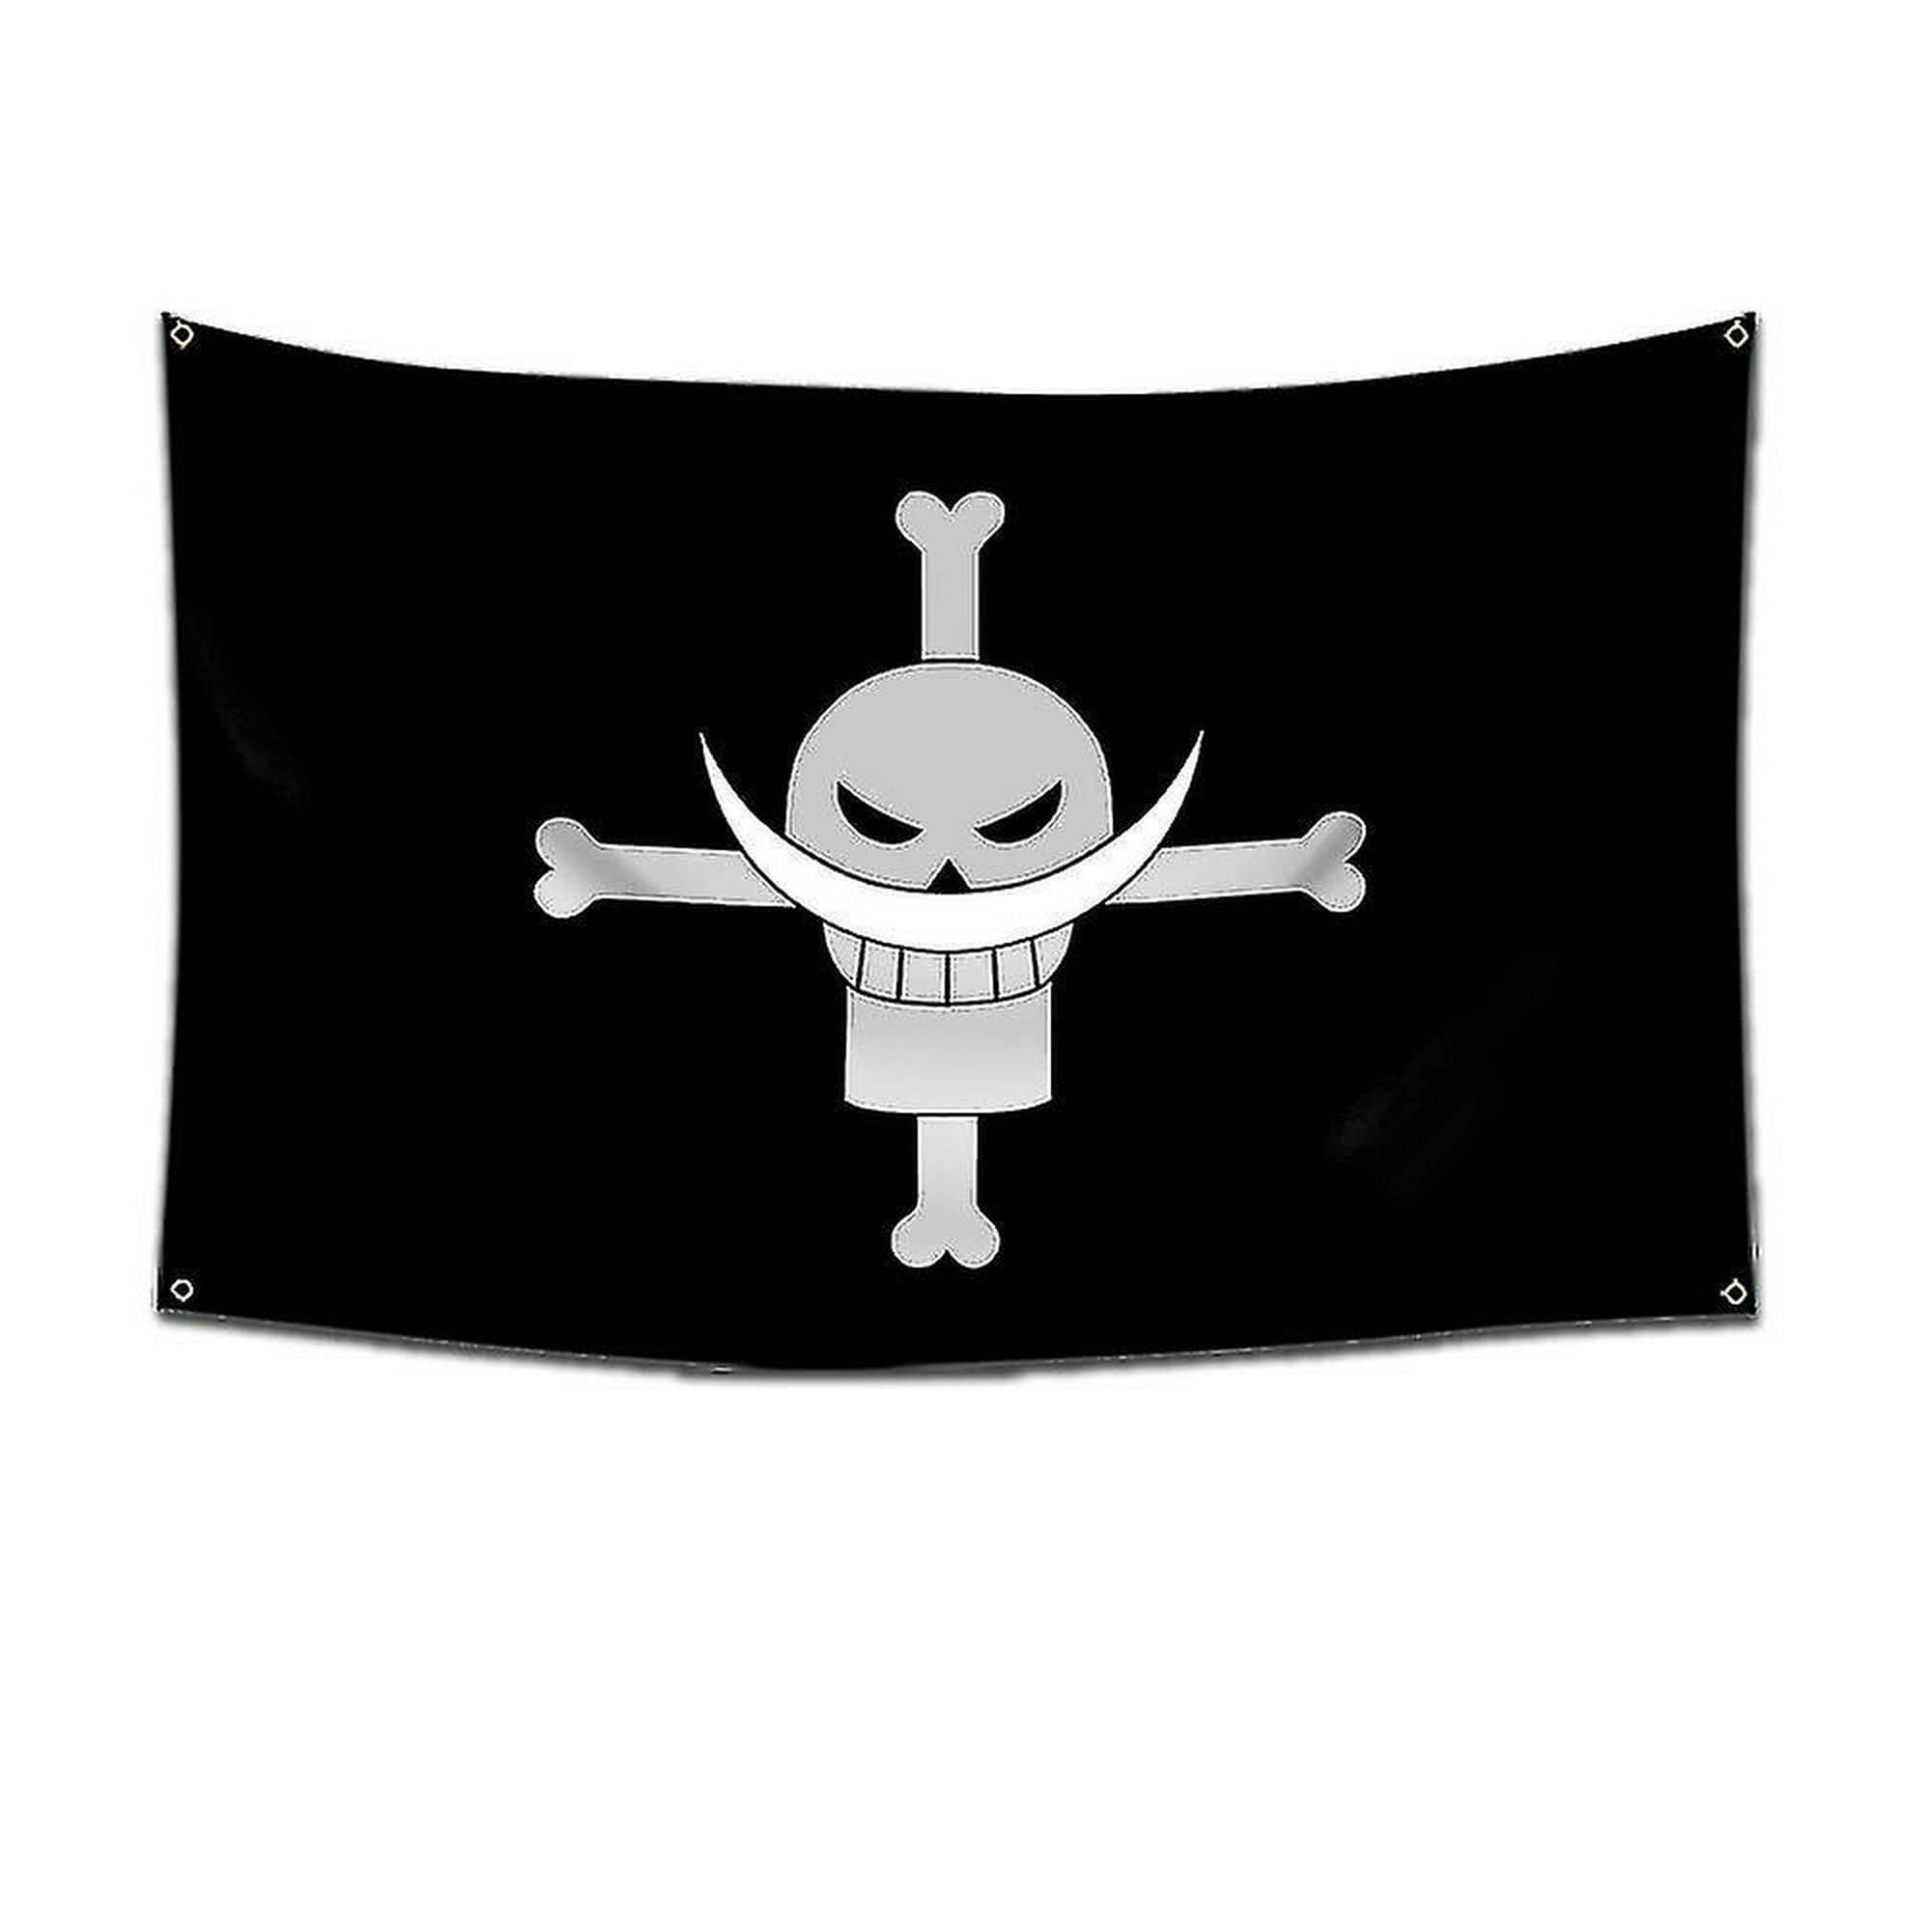 Bandera bandera pirata 30 x 45 cm - Promonautica